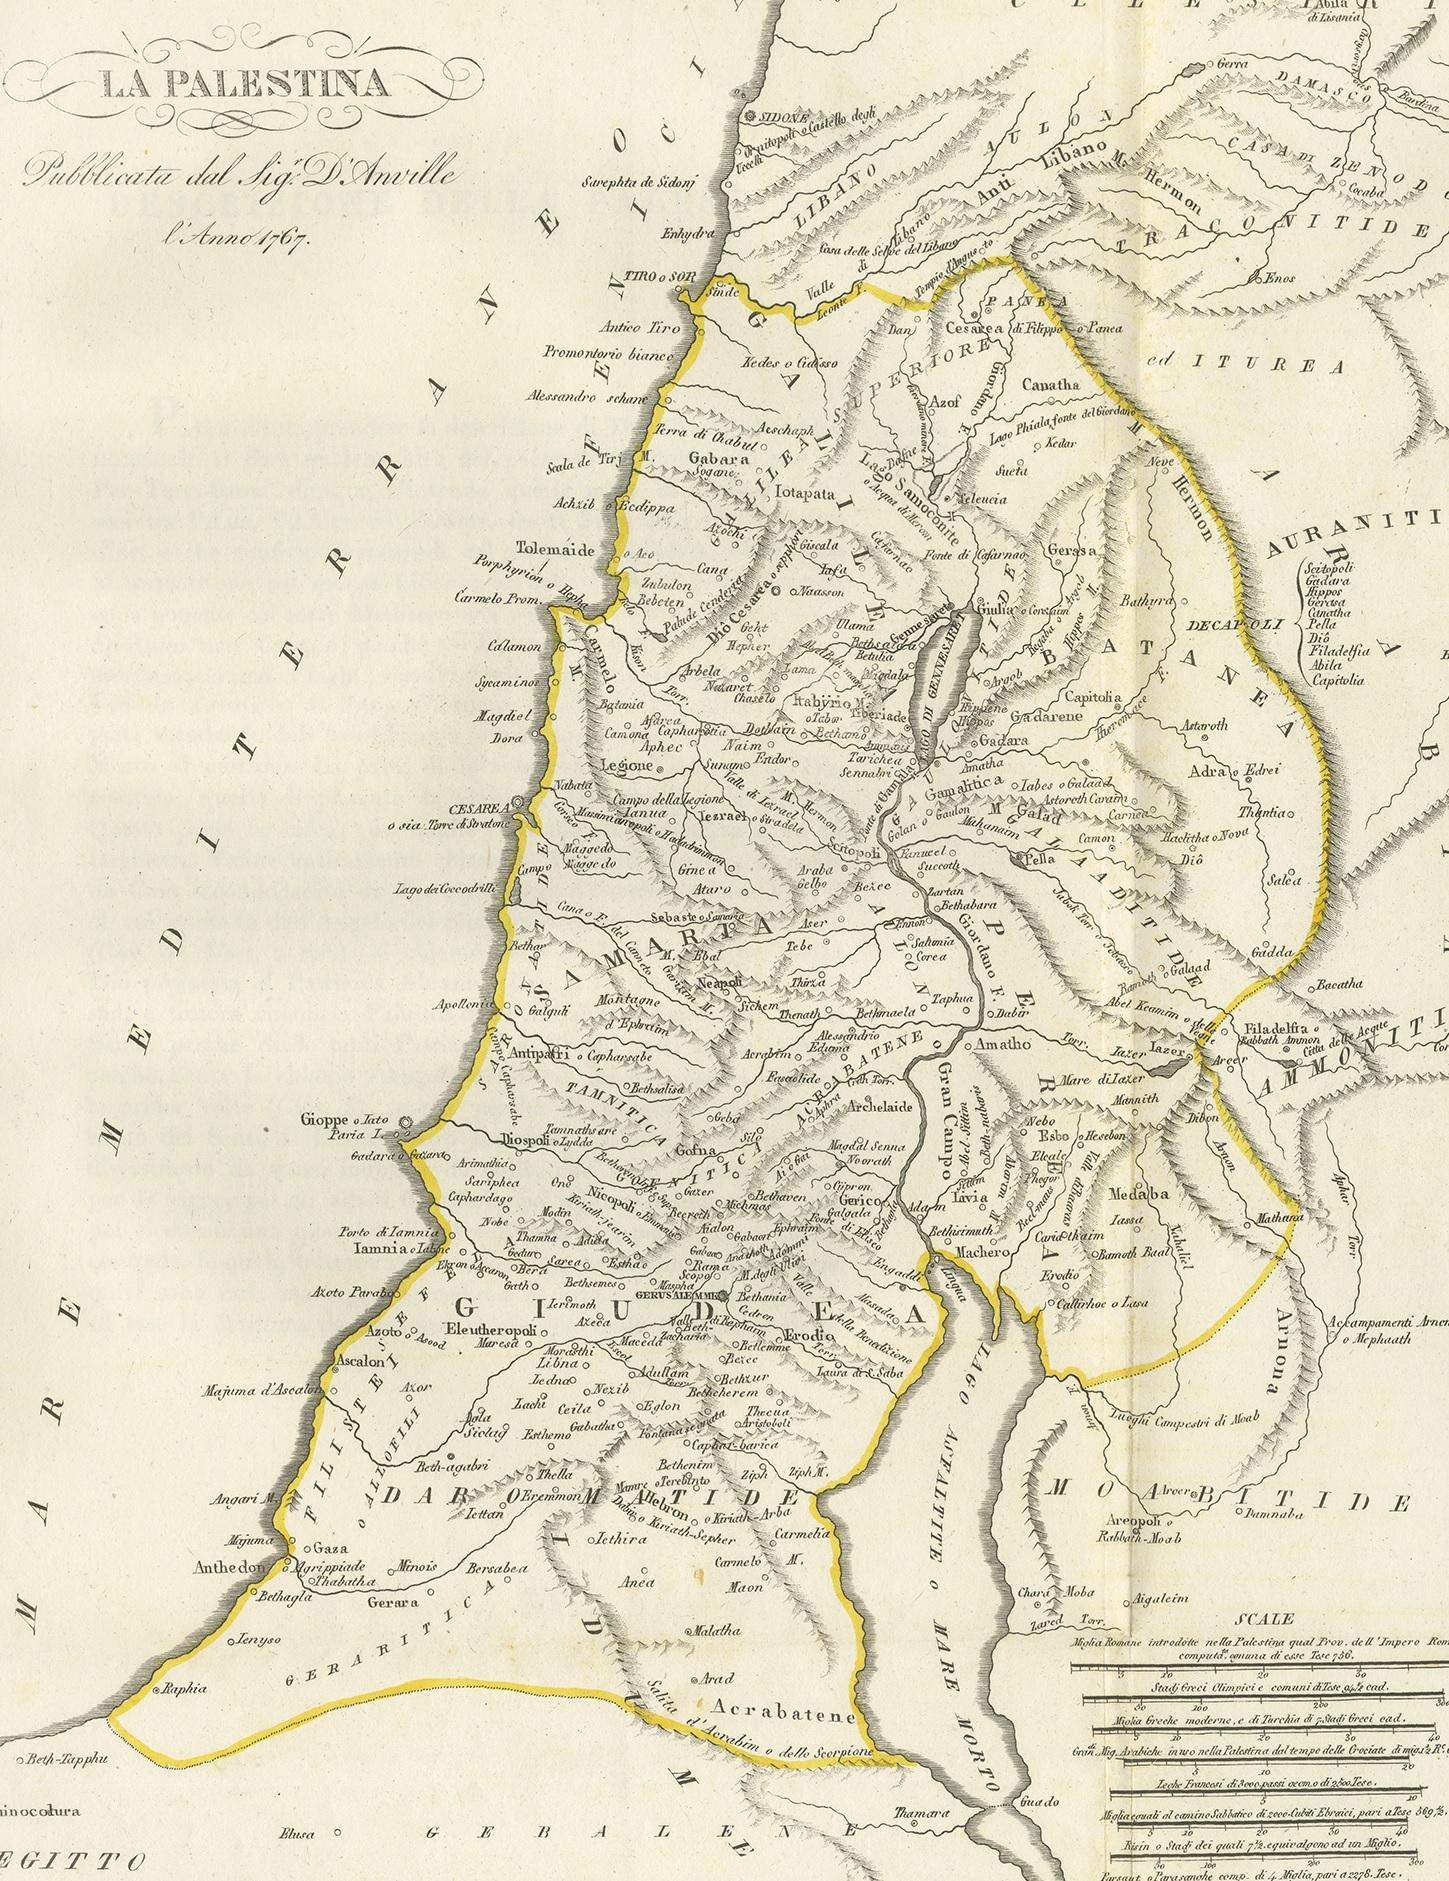 Antique map titled 'La Palestina'. Map of Palestine. This map originates from 'Relation de l'Ambassade Anglaise, envoyée en 1795 dans le Royaume d'Ava, ou l'Empire des Birmans' by M. Symes. Published 1800.